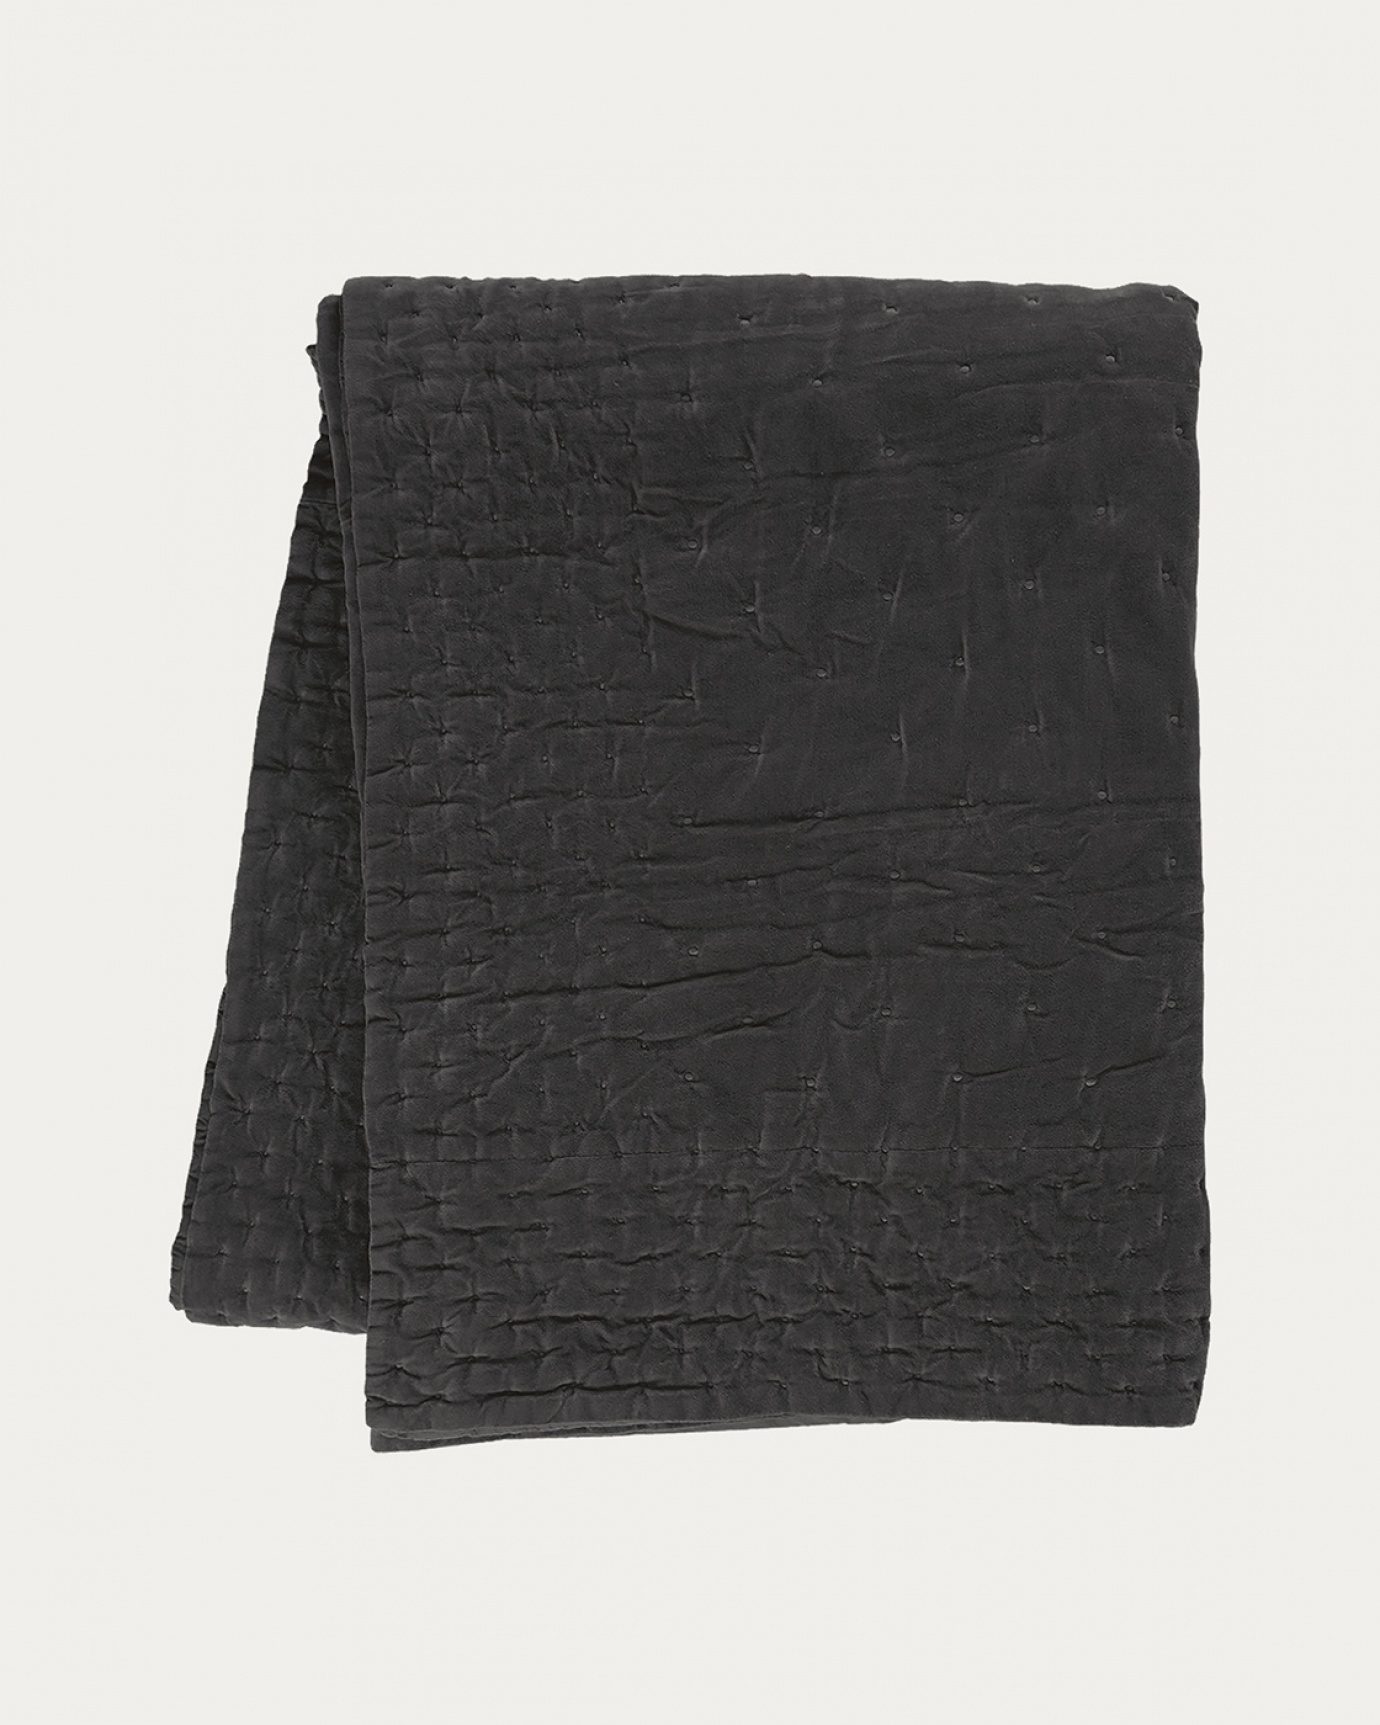 Produktbild mörk kolgrå PAOLO överkast av mjuk bomullssammet för dubbelsäng från LINUM DESIGN. Storlek 270x260 cm.